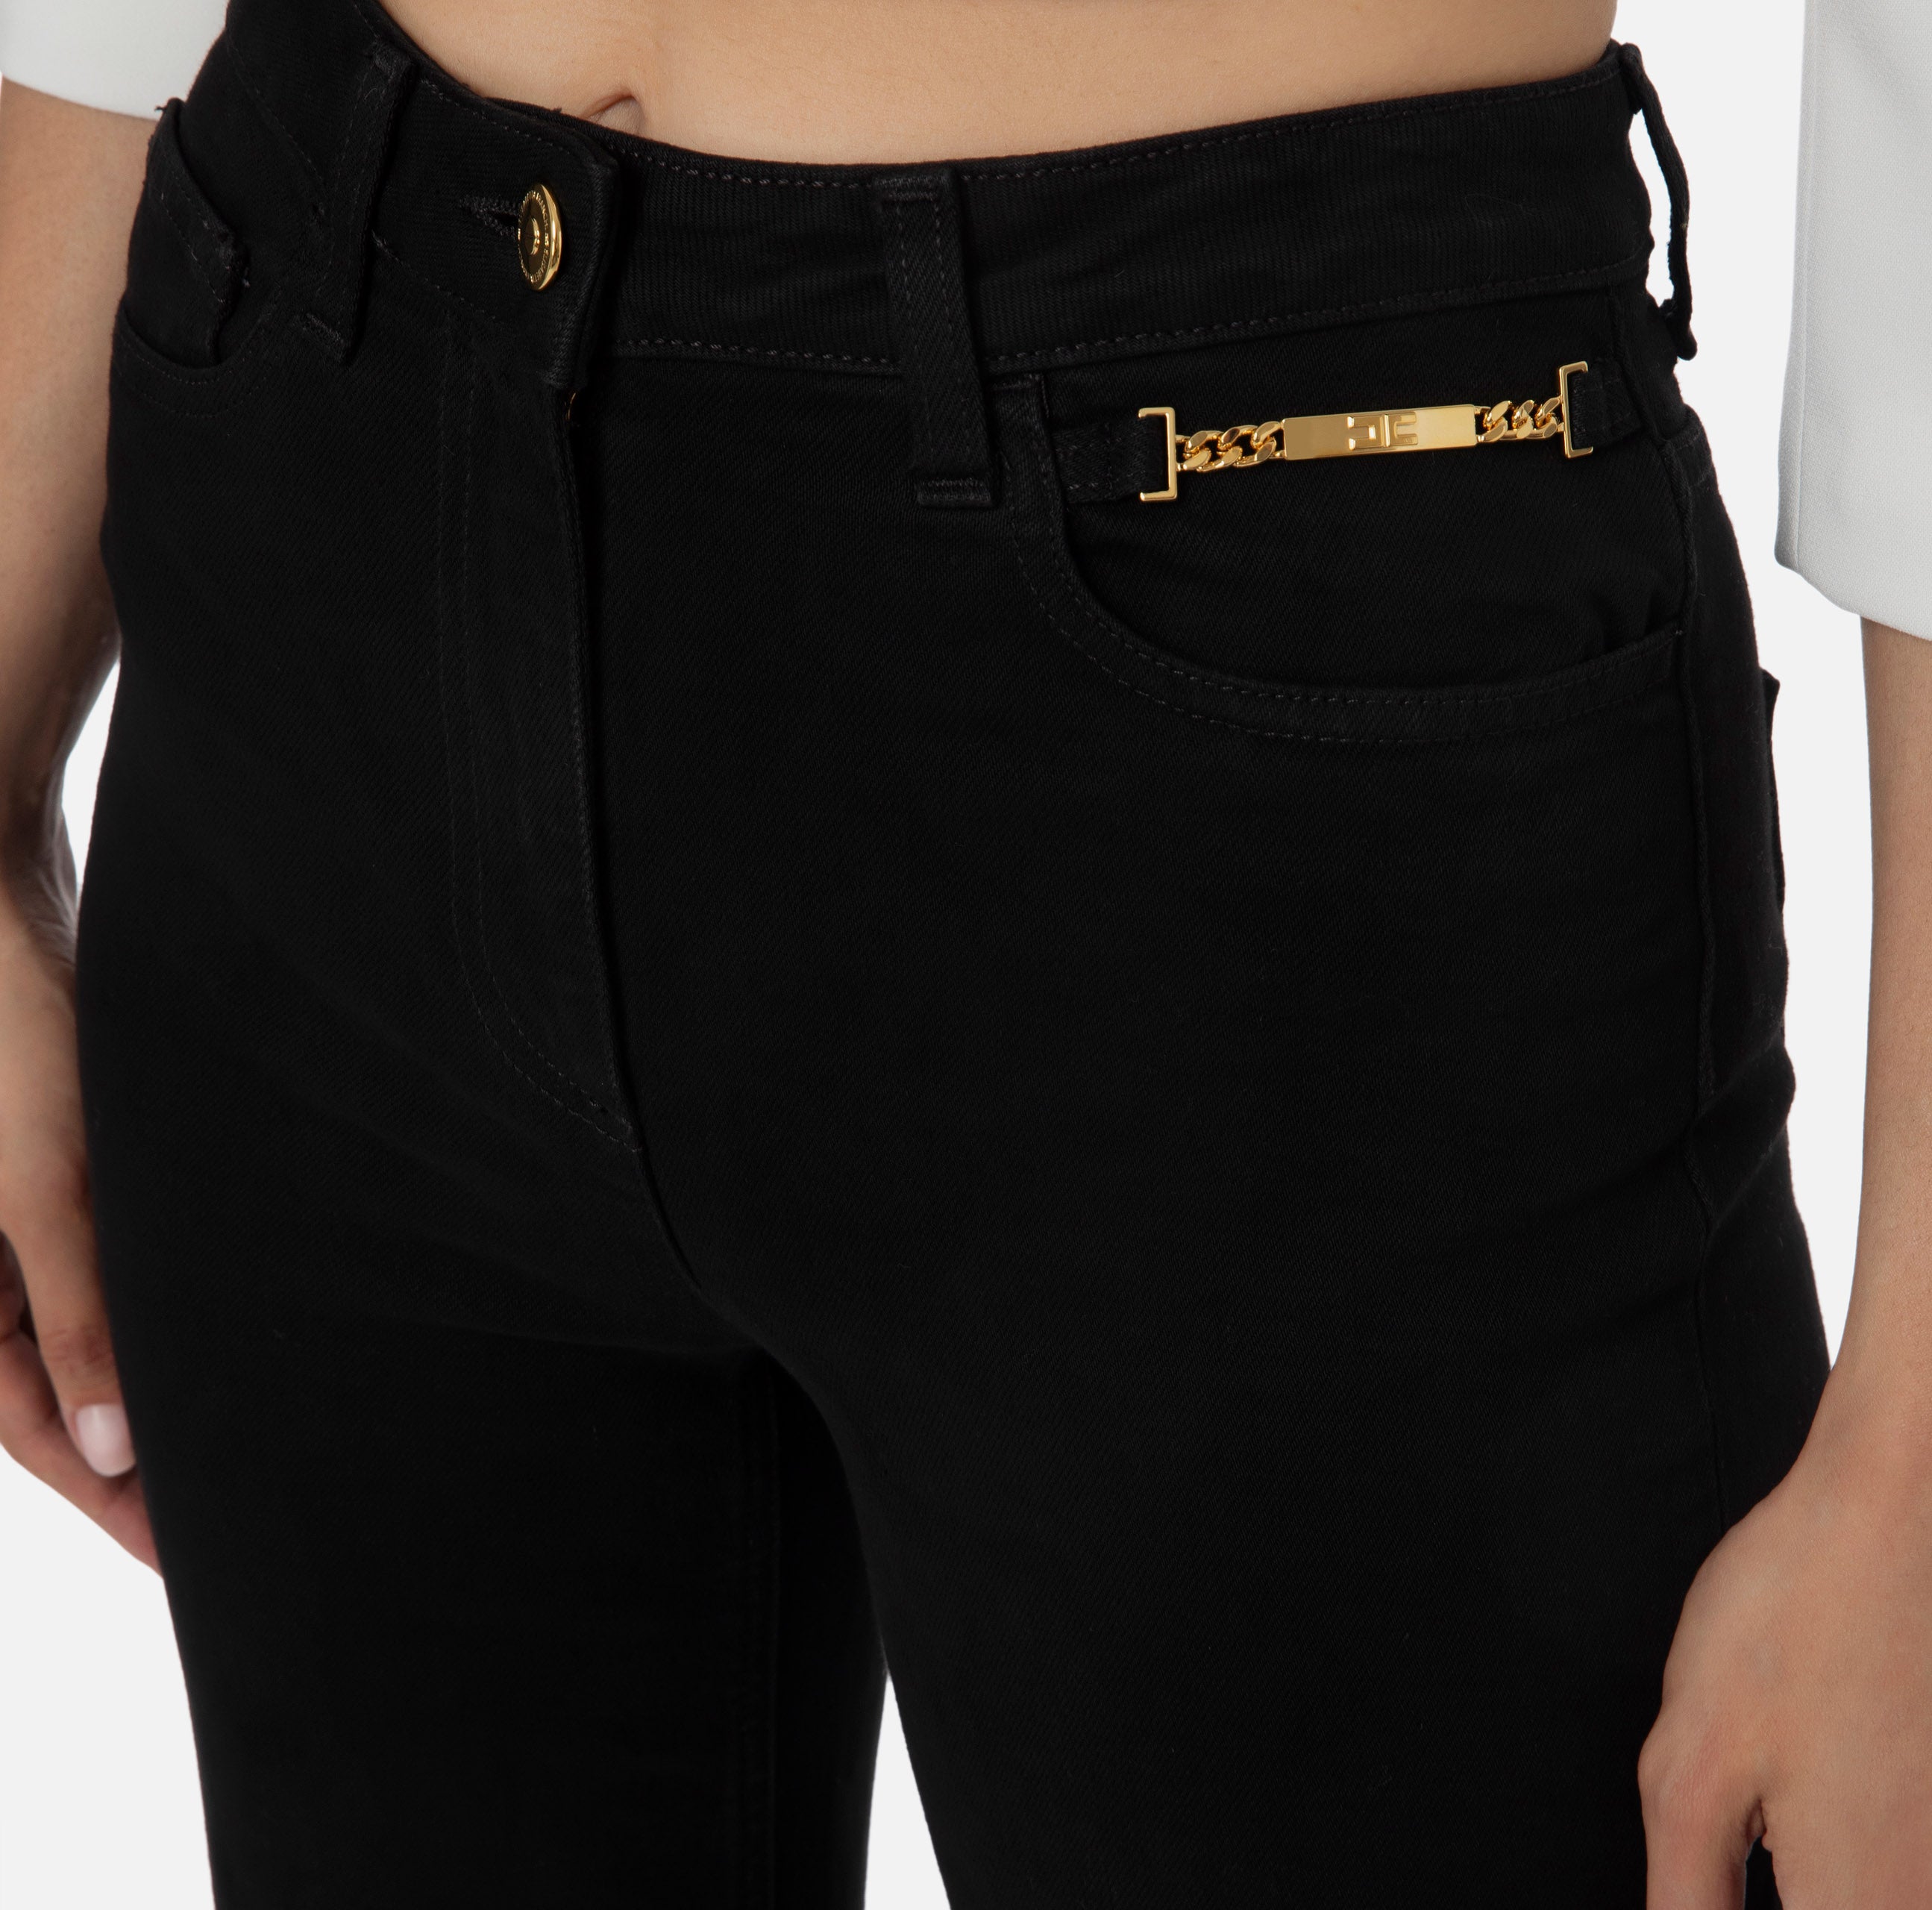 Elisabetta Franchi Women's Jeans PJ23I36E2 Black